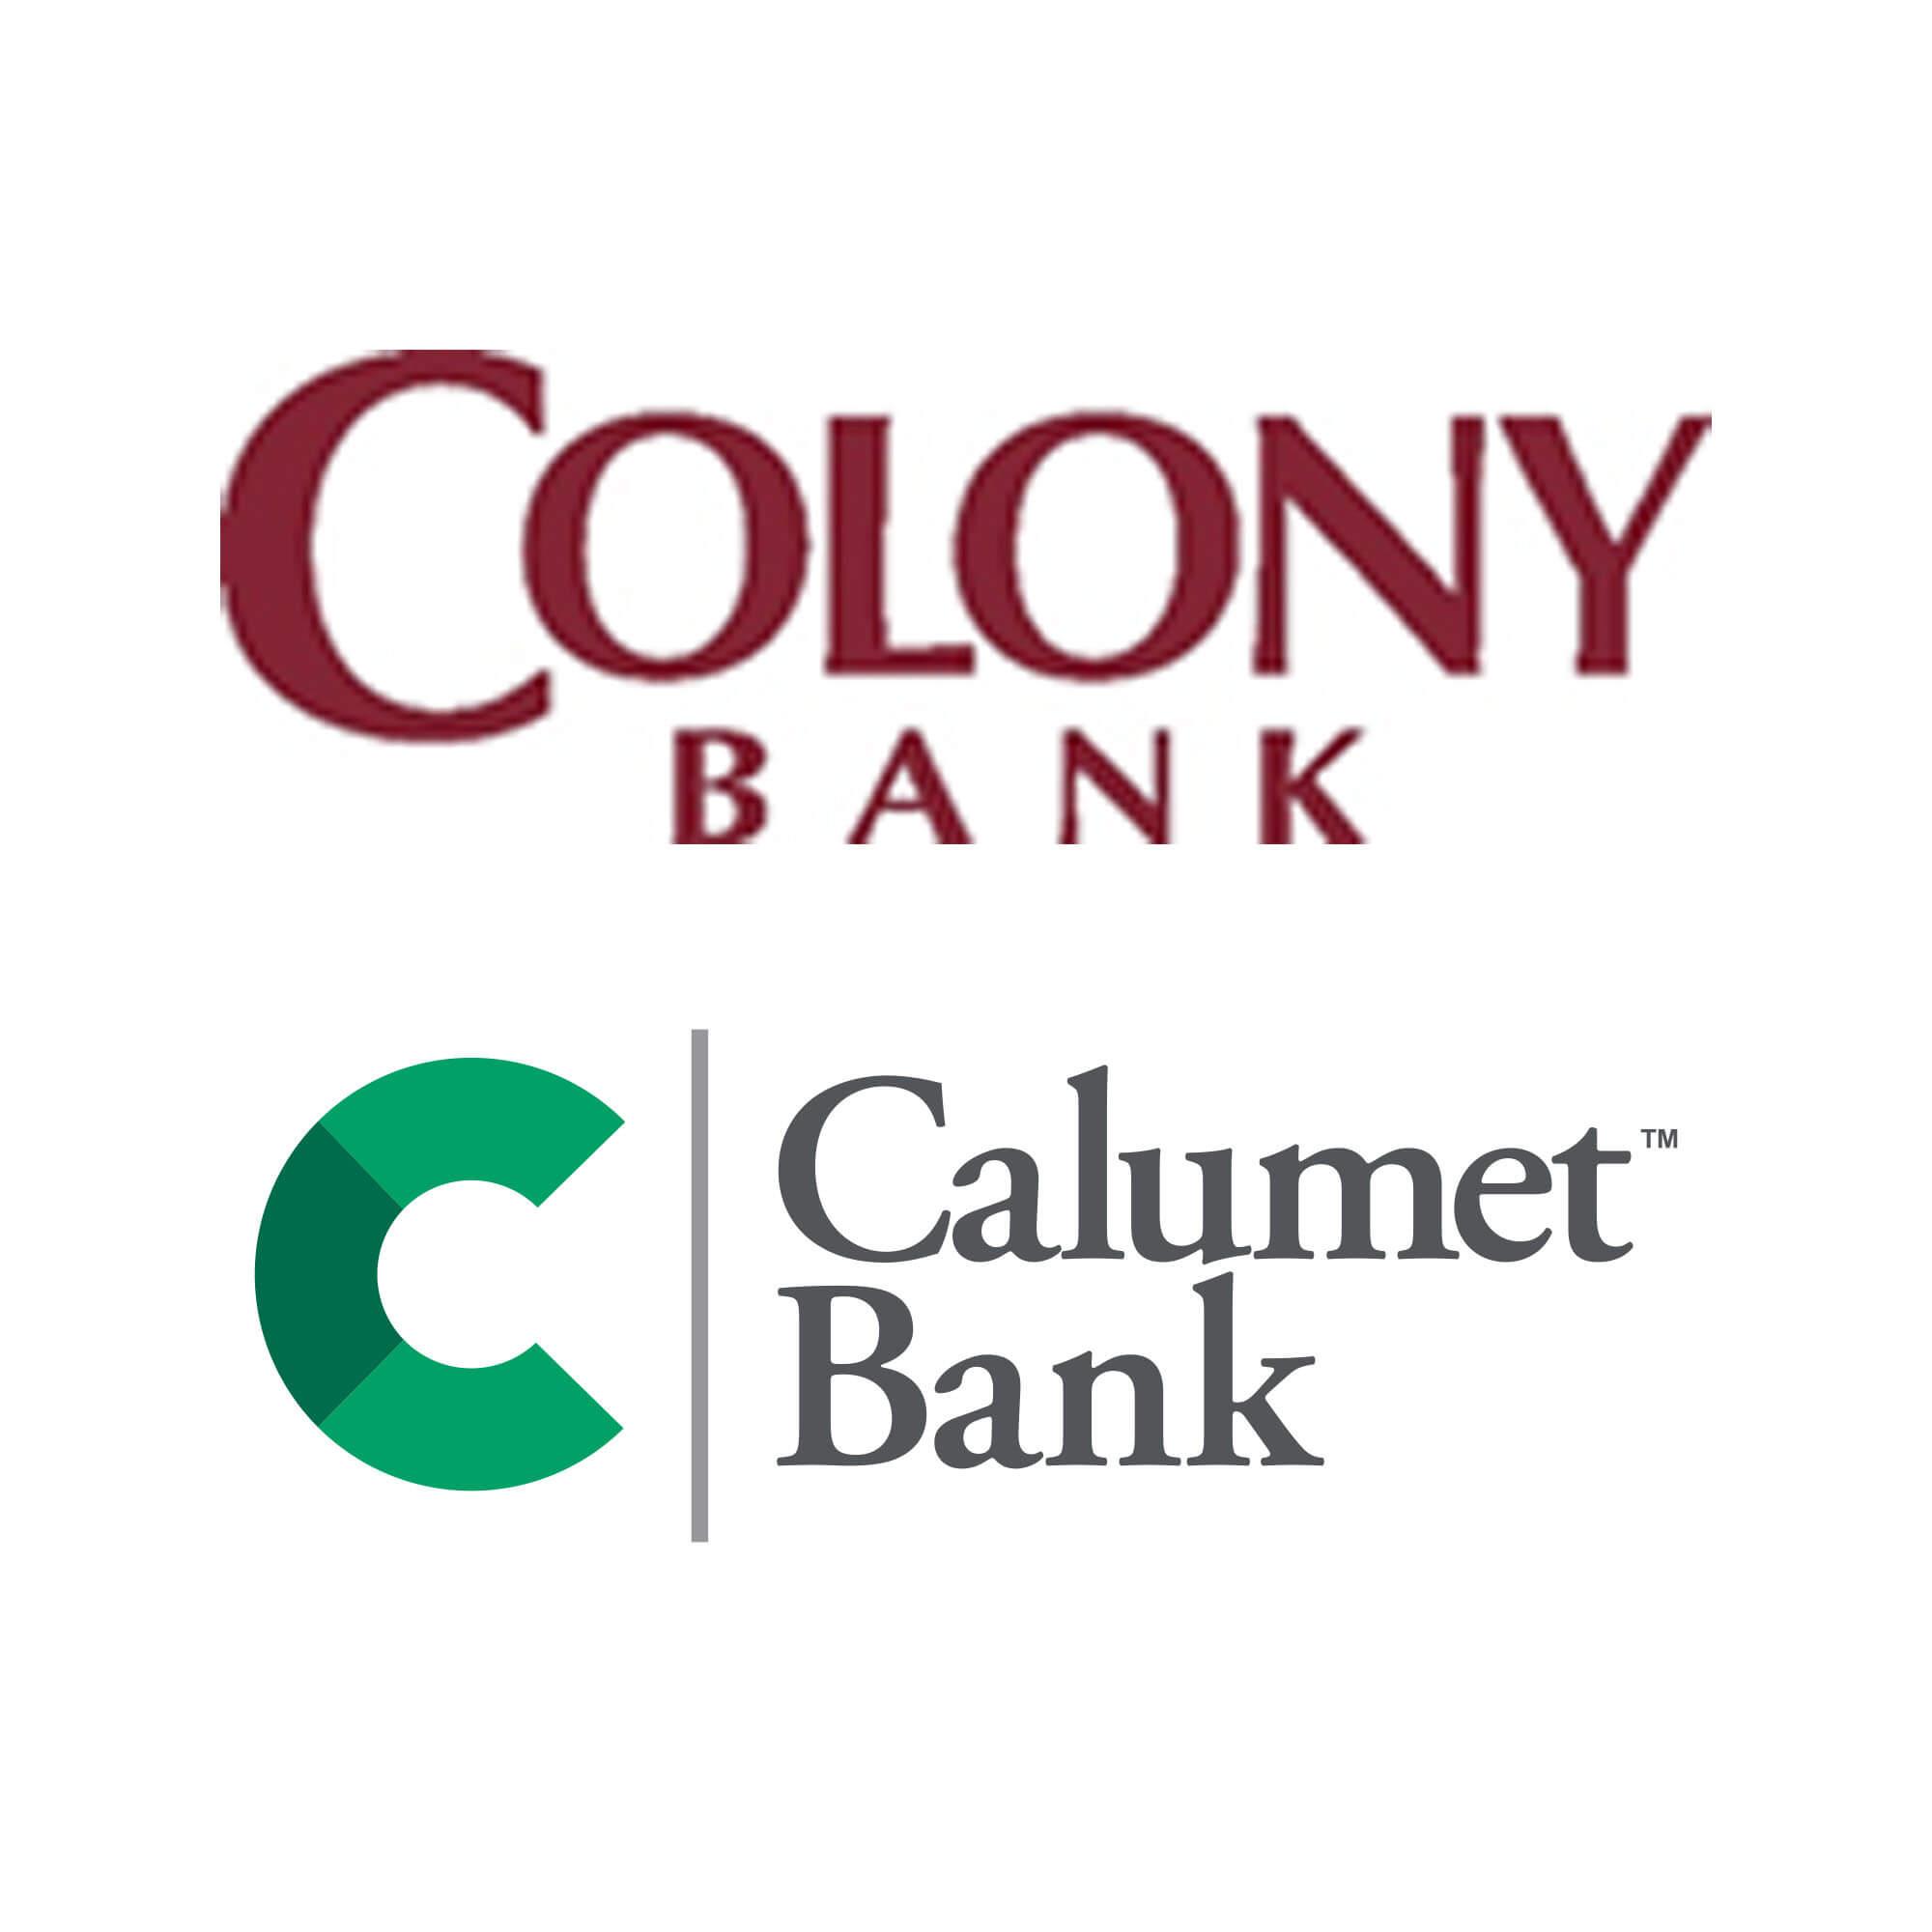 Calumet Logo - Calumet Bank to Merge with Colony Bank in 2019 - Calumet Bank ...